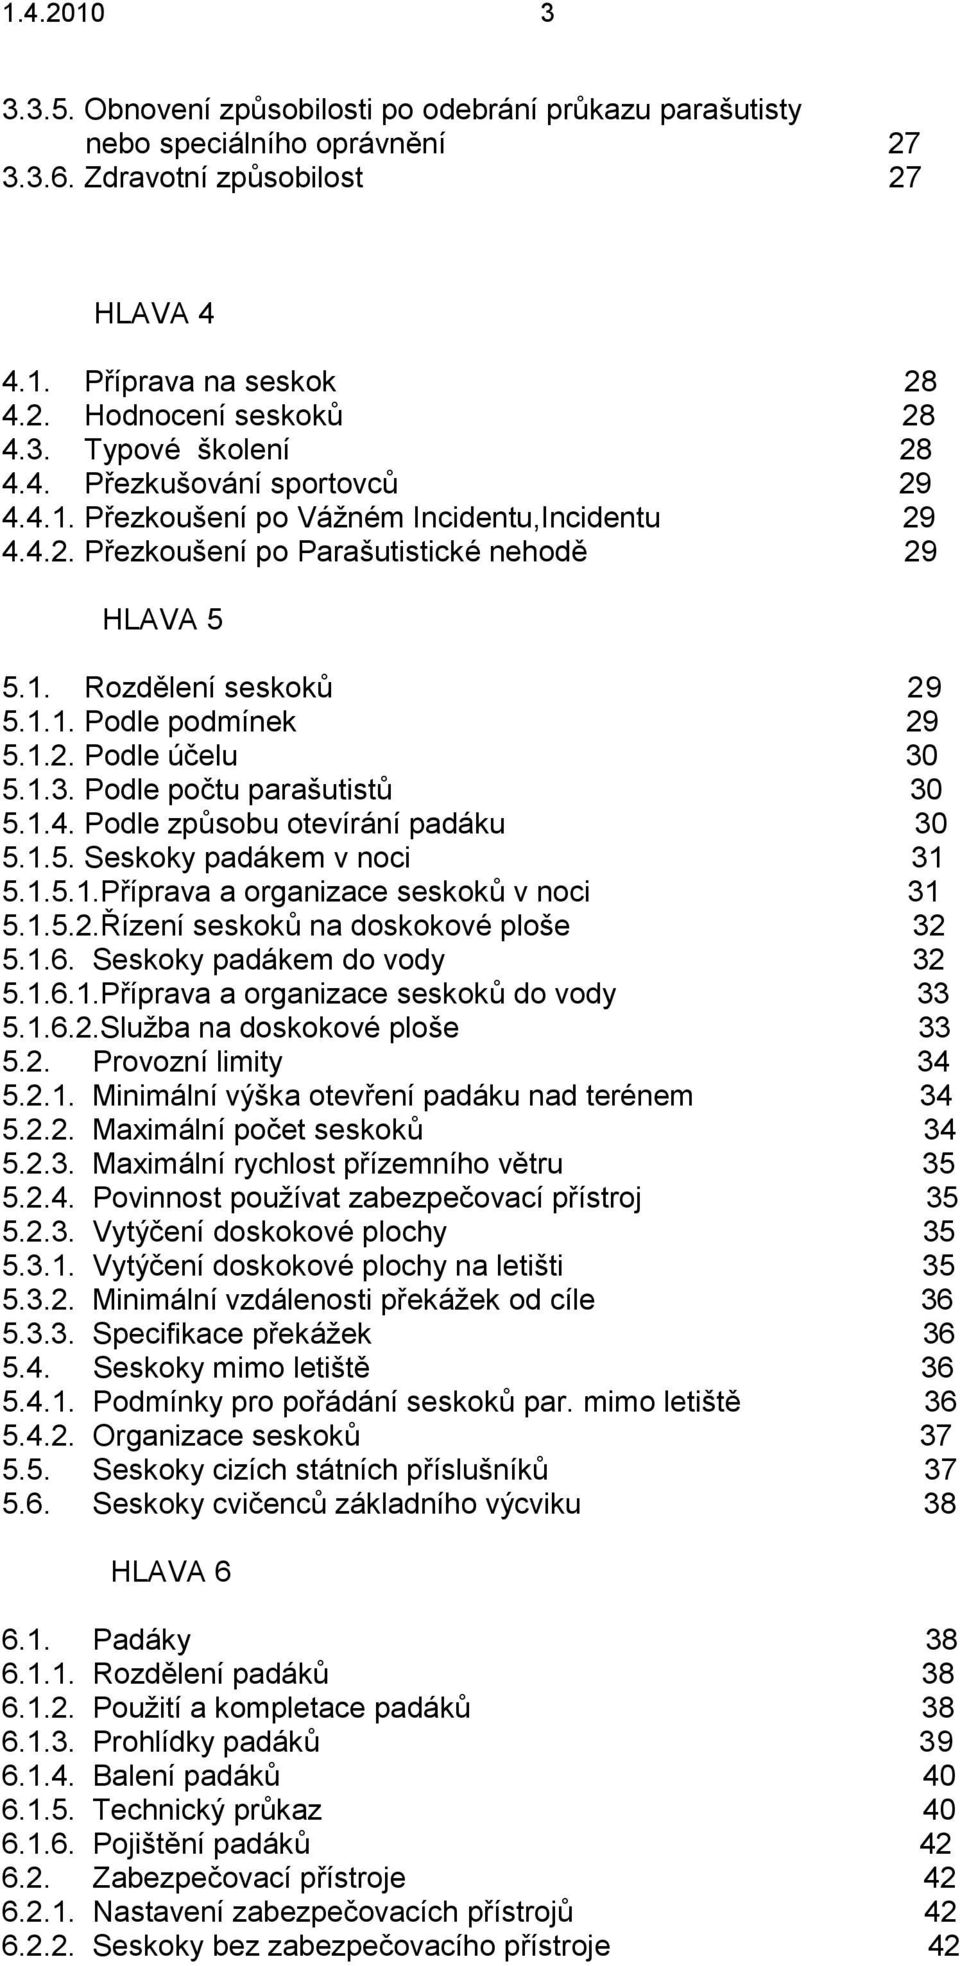 AEROKLUB ČESKÉ REPUBLIKY. SMĚRNICE pro provádění seskoků padákem v  aeroklubech V - PARA PDF Free Download